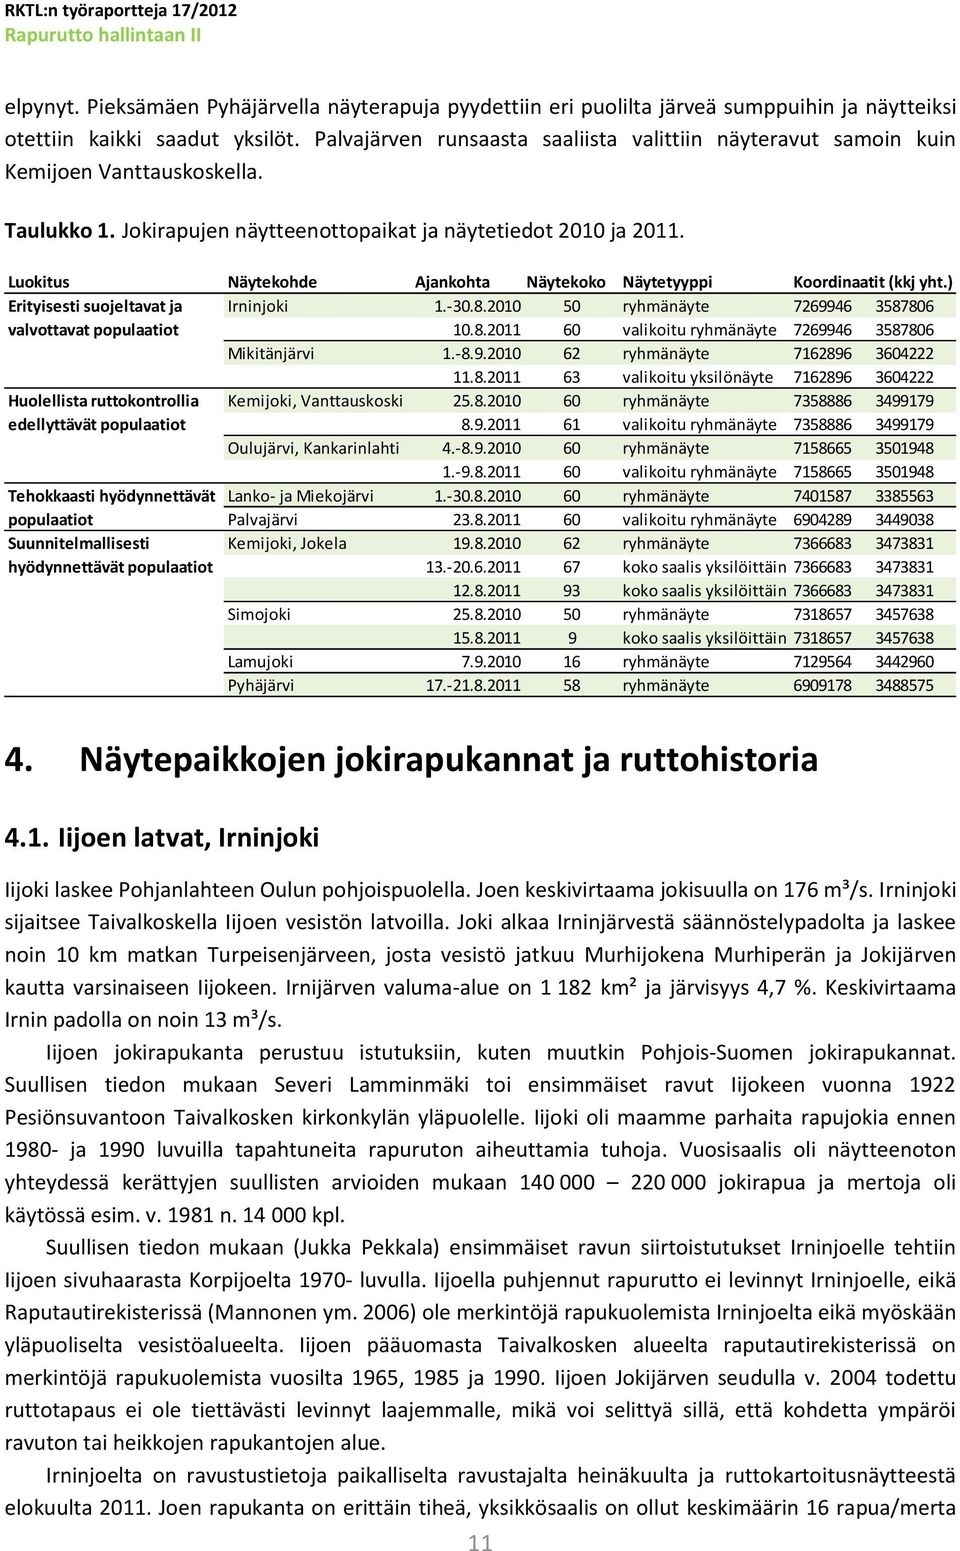 Luokitus Näytekohde Ajankohta Näytekoko Näytetyyppi Koordinaatit (kkj yht.) Erityisesti suojeltavat ja Irninjoki 1.-30.8.2010 50 ryhmänäyte 7269946 3587806 valvottavat populaatiot 10.8.2011 60 valikoitu ryhmänäyte 7269946 3587806 Mikitänjärvi 1.